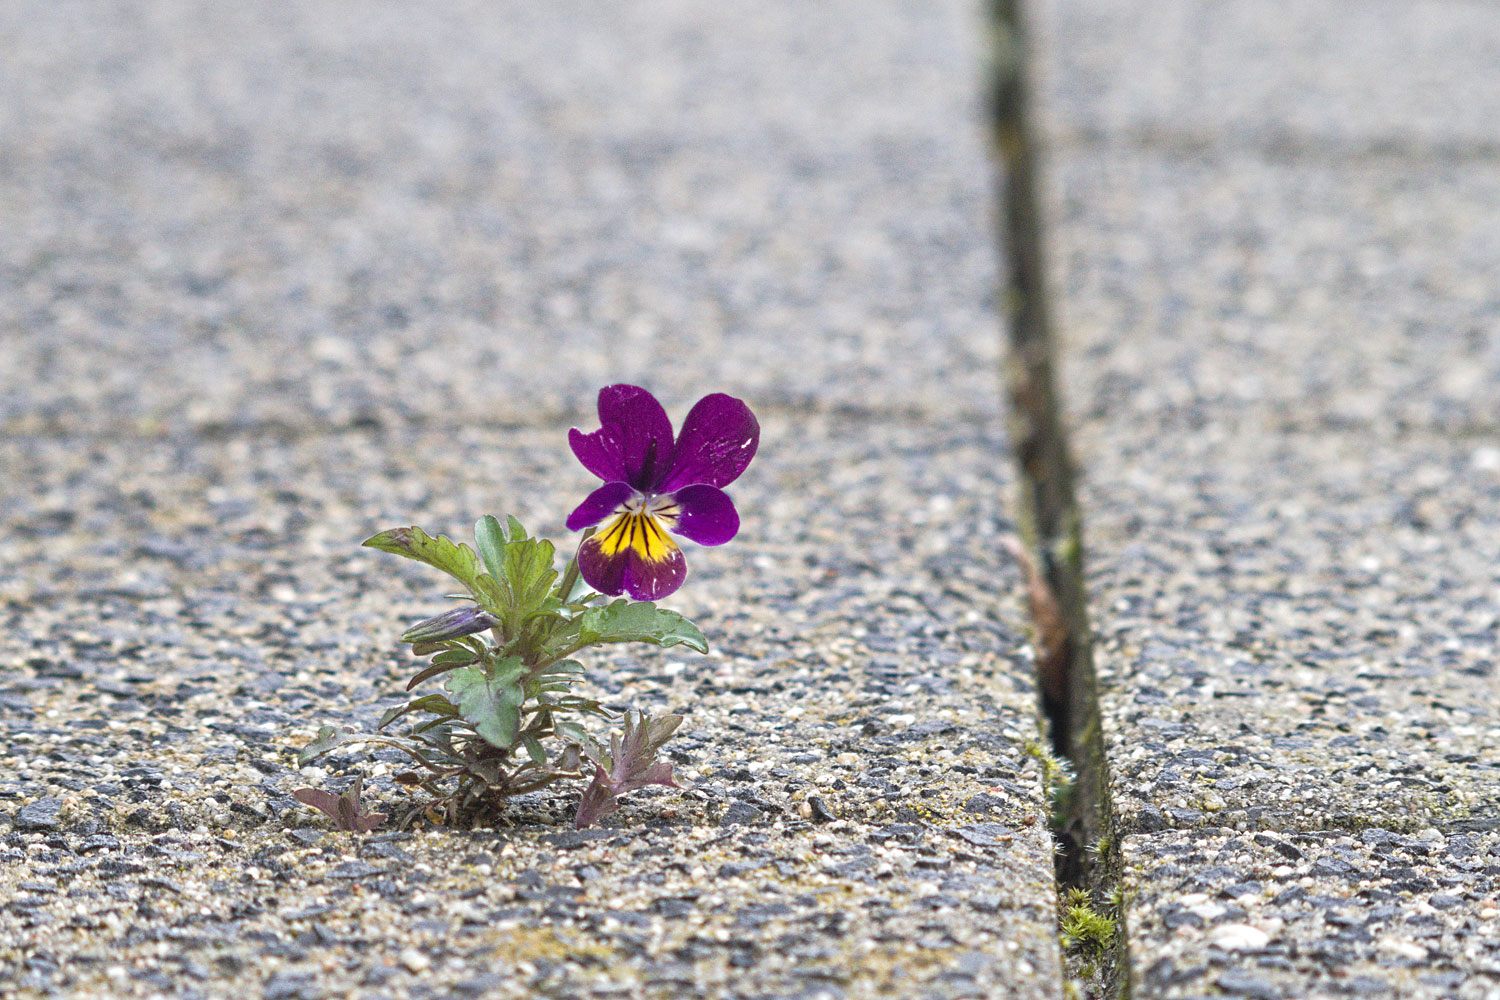 Terug naar buiten. Een eenzaam viooltje heeft toch een spleetje tussen de tegels gevonden om te bloeien.